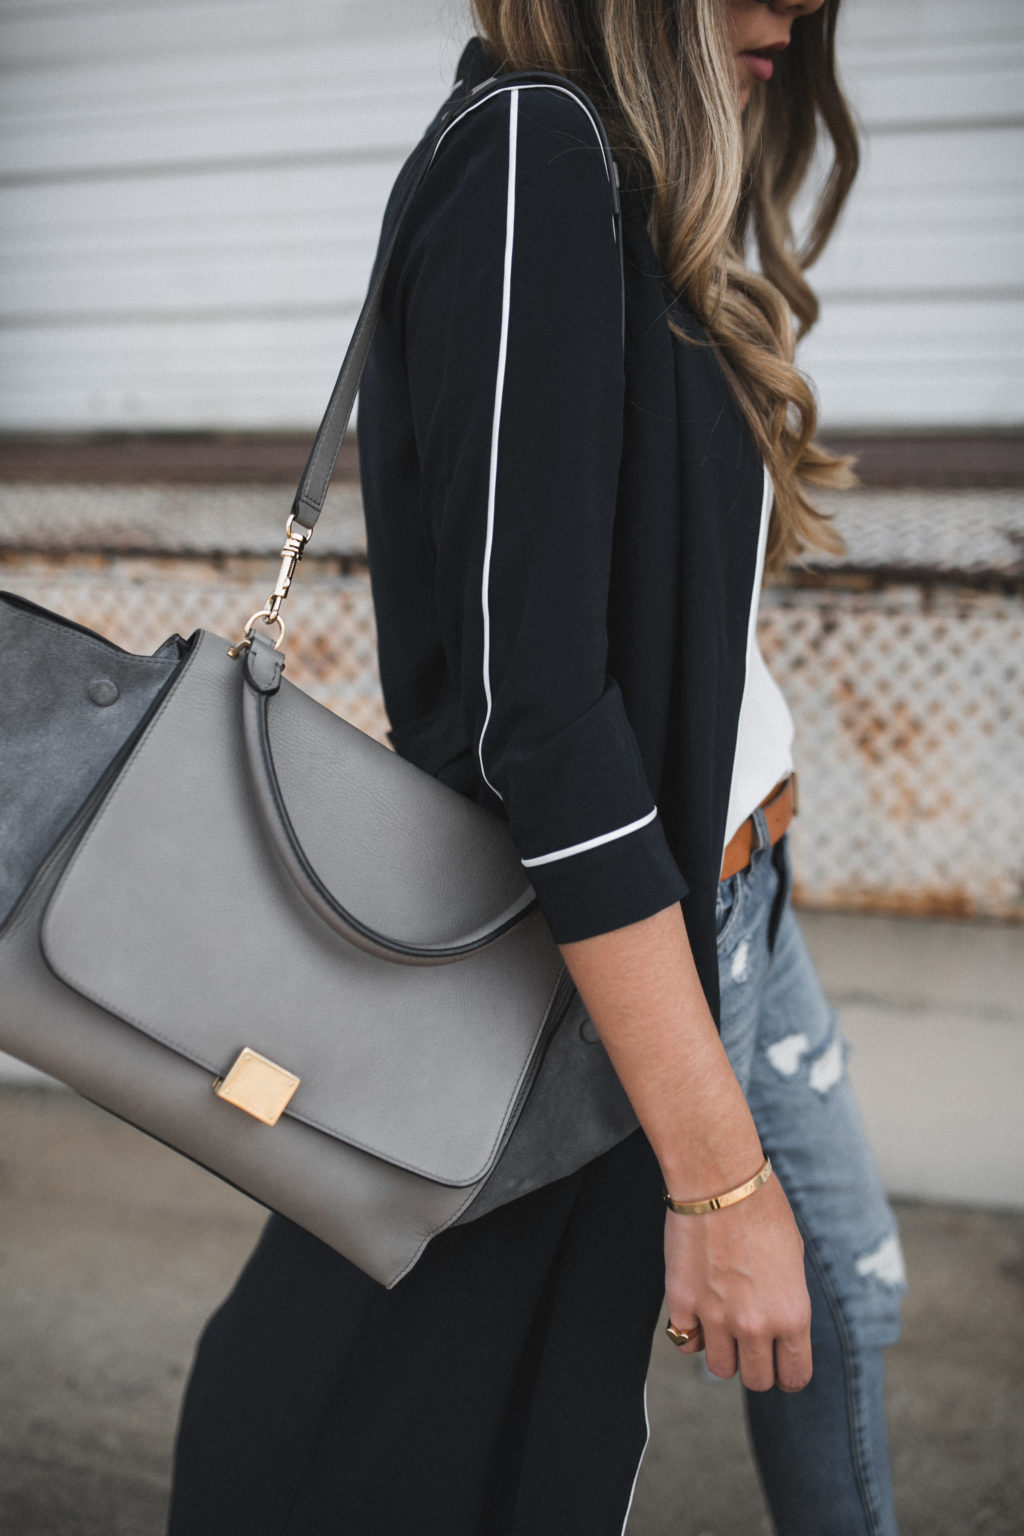 shirtdress and Celine bag